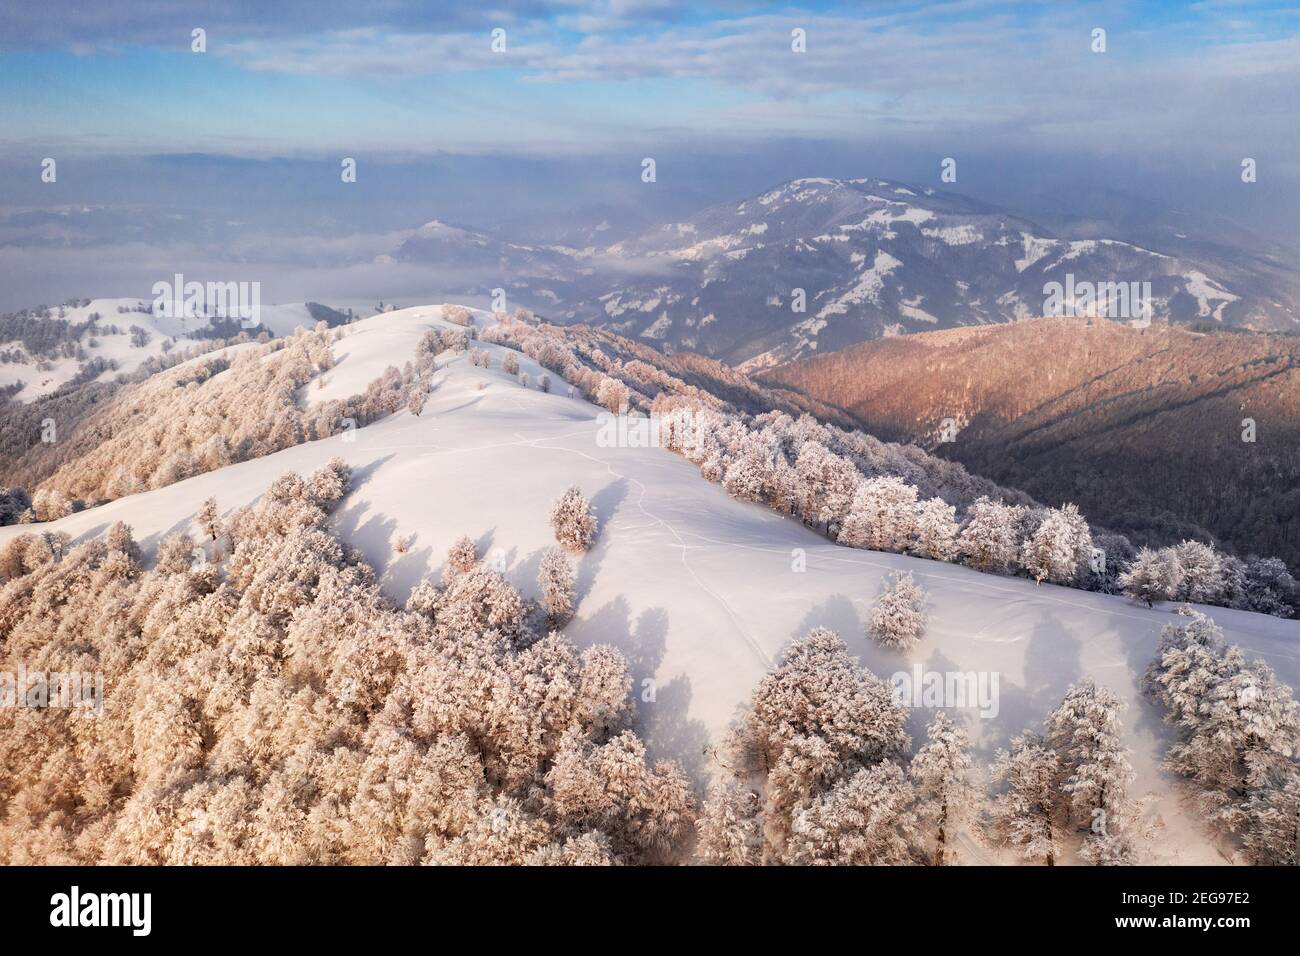 Incredibile vista aerea della catena montuosa, dei prati e delle cime innevate in inverno. Foresta con brina incandescente con luce calda luminosa alba Foto Stock